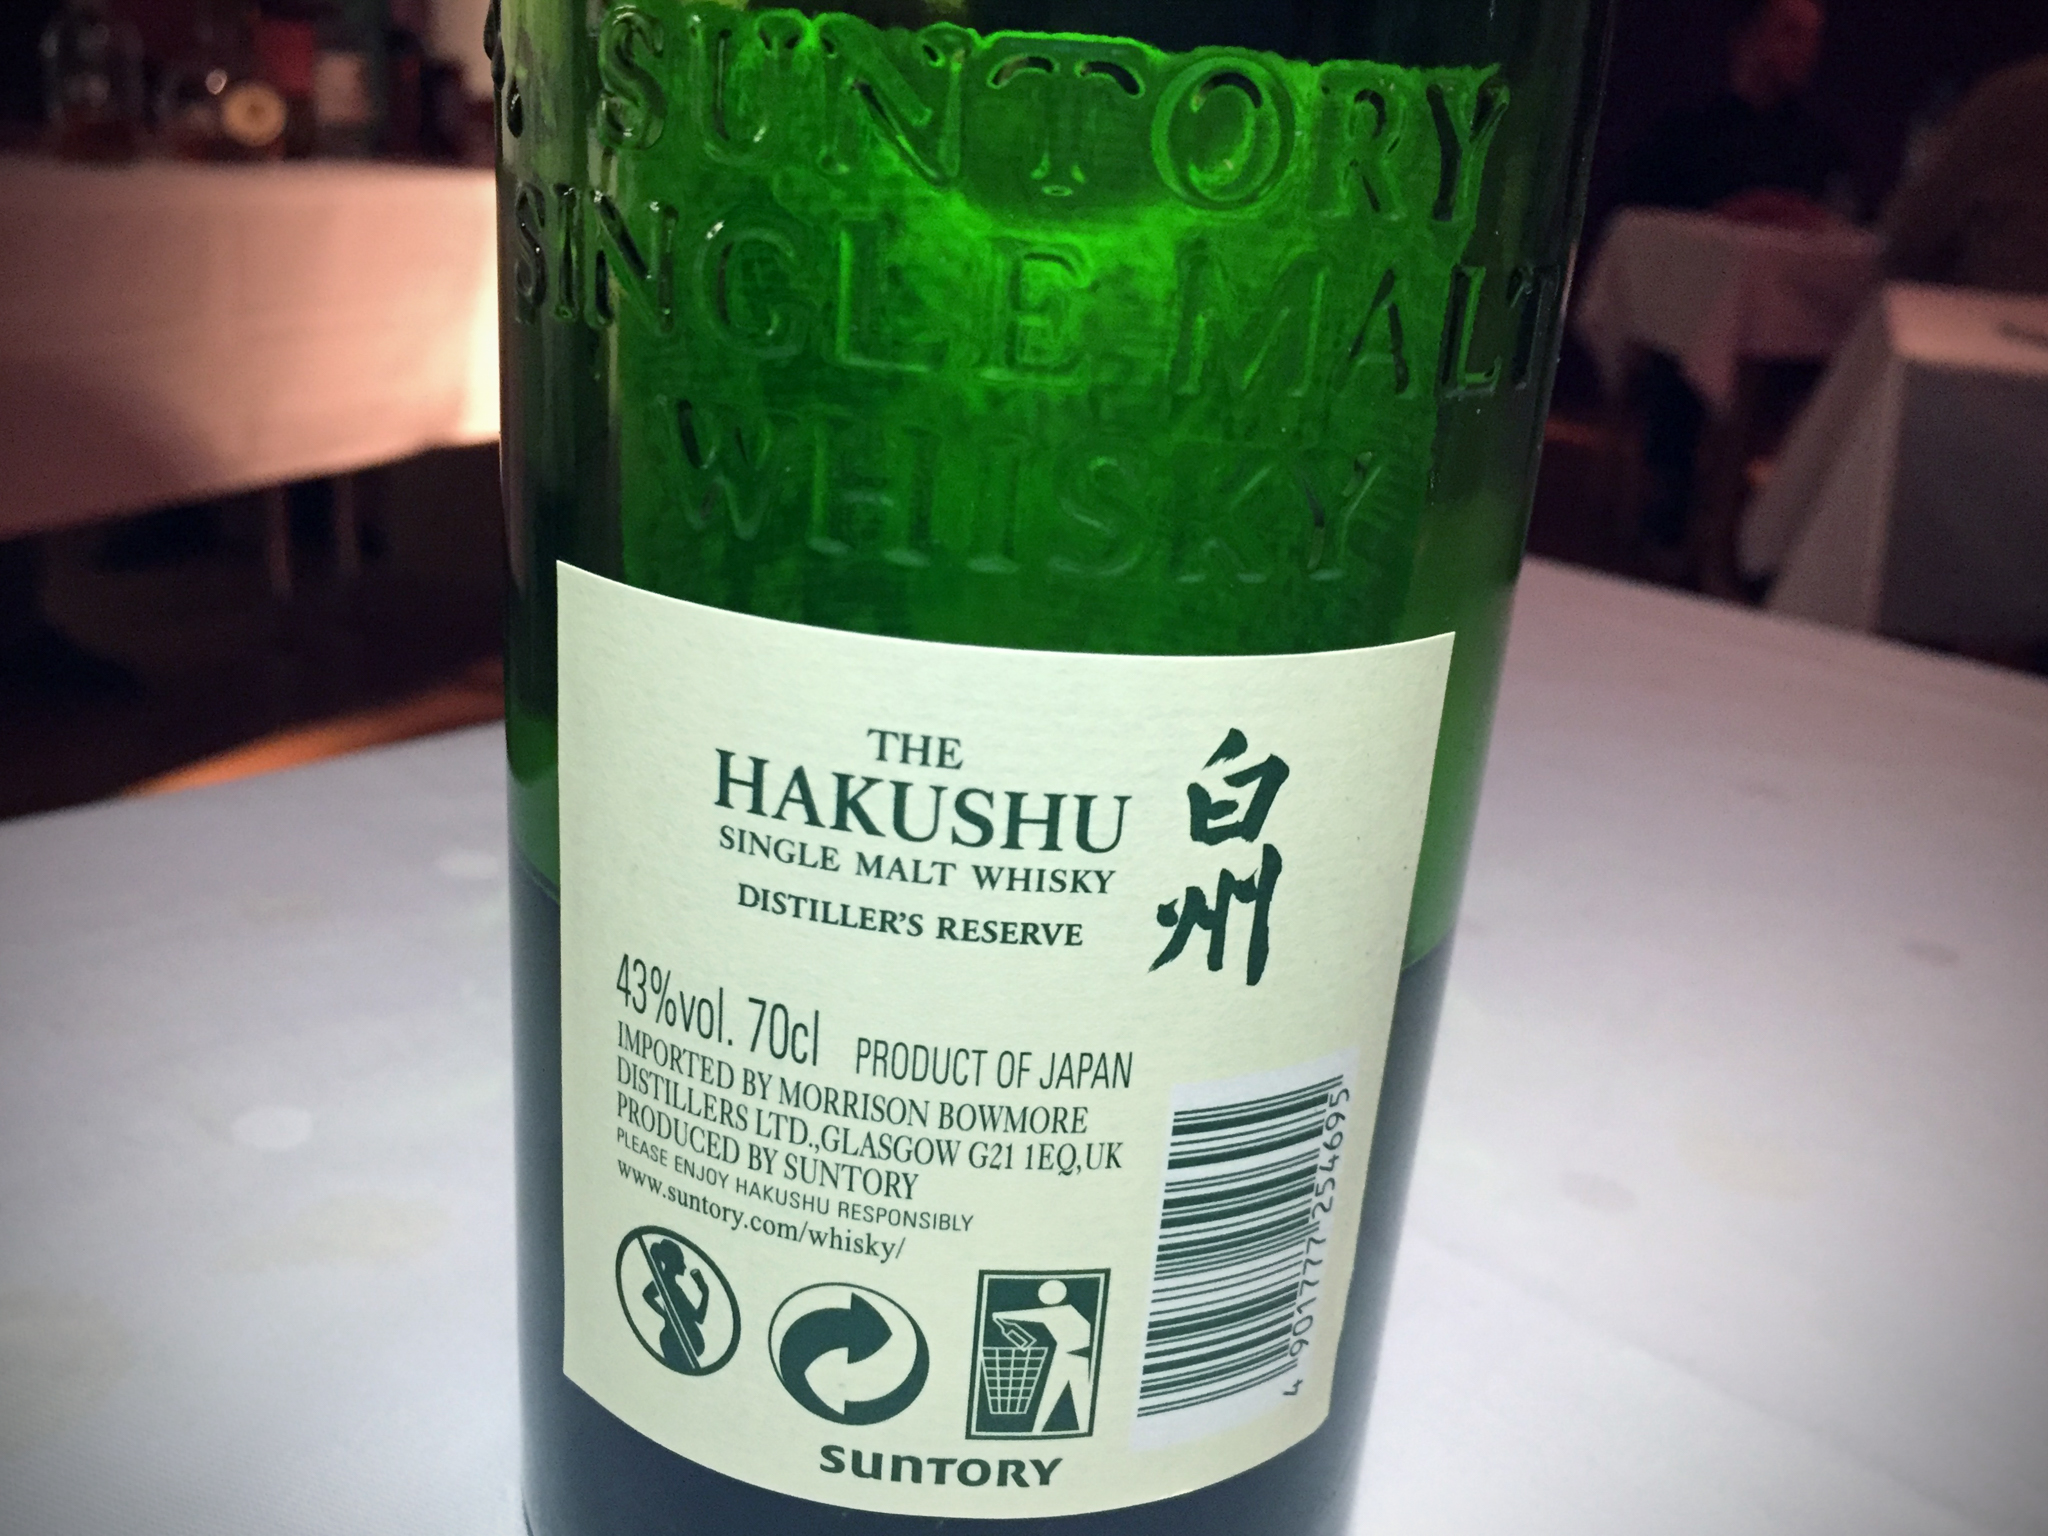 Etikett auf der Flaschenrückseite des Suntory The Hakushu Distiller's Reserve während des Whisky-Tastings zur Sonderausstellung "Oishii! Lecker Essen" im Linden-Museum Stuttgart am 10. Februar 2017.